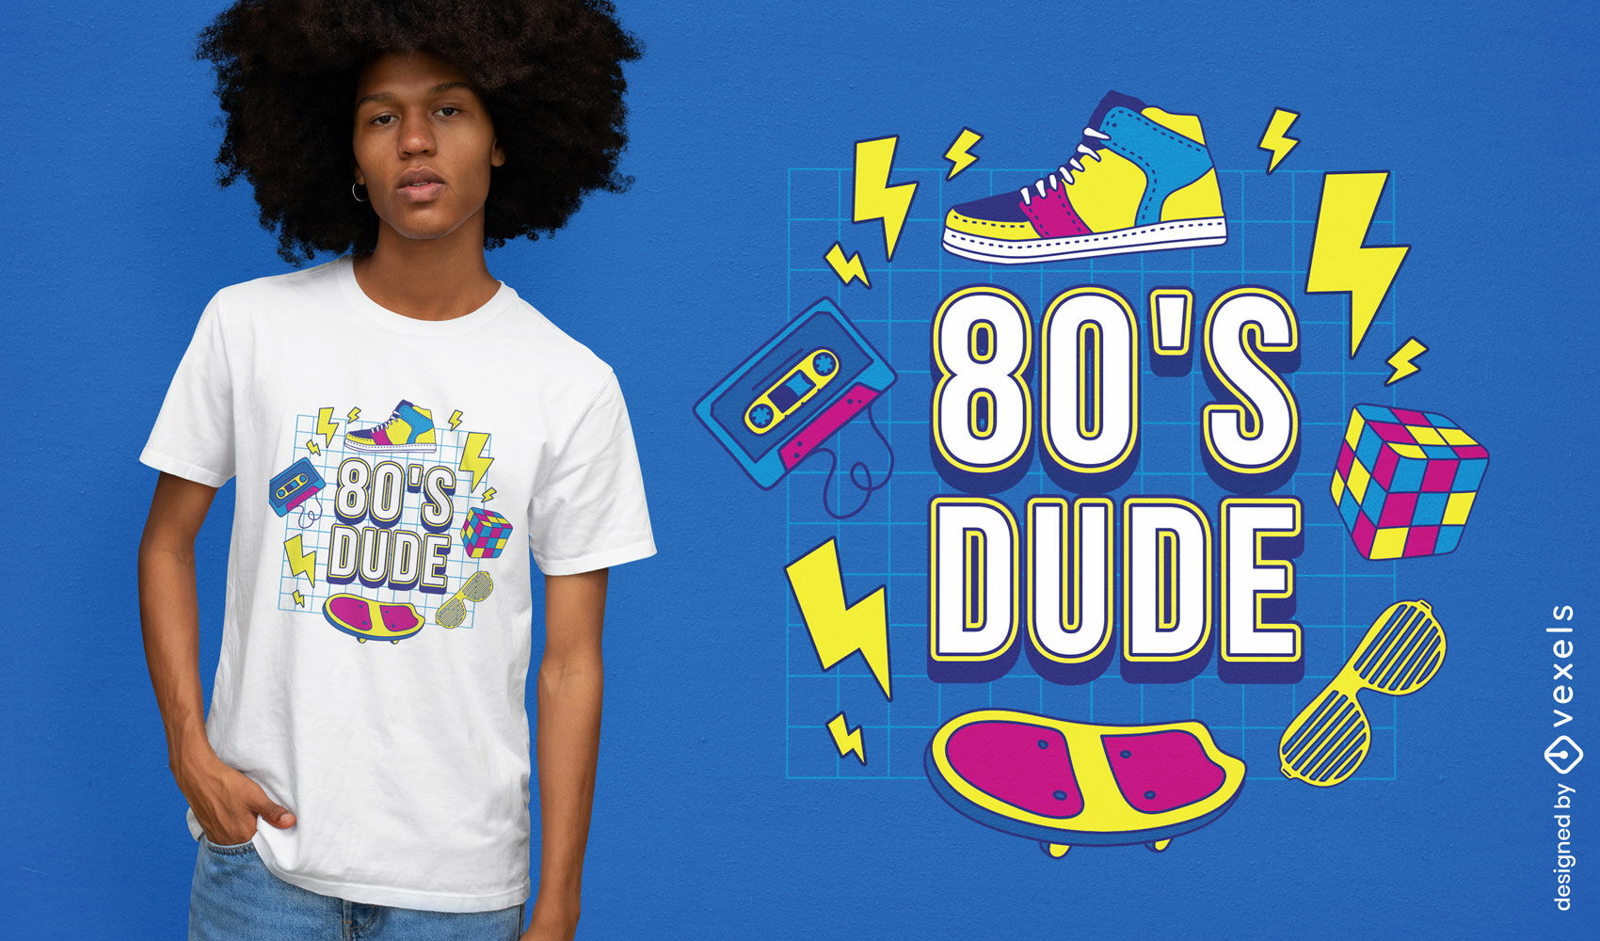 Divertido dise?o de camiseta con elementos retro de los 80.